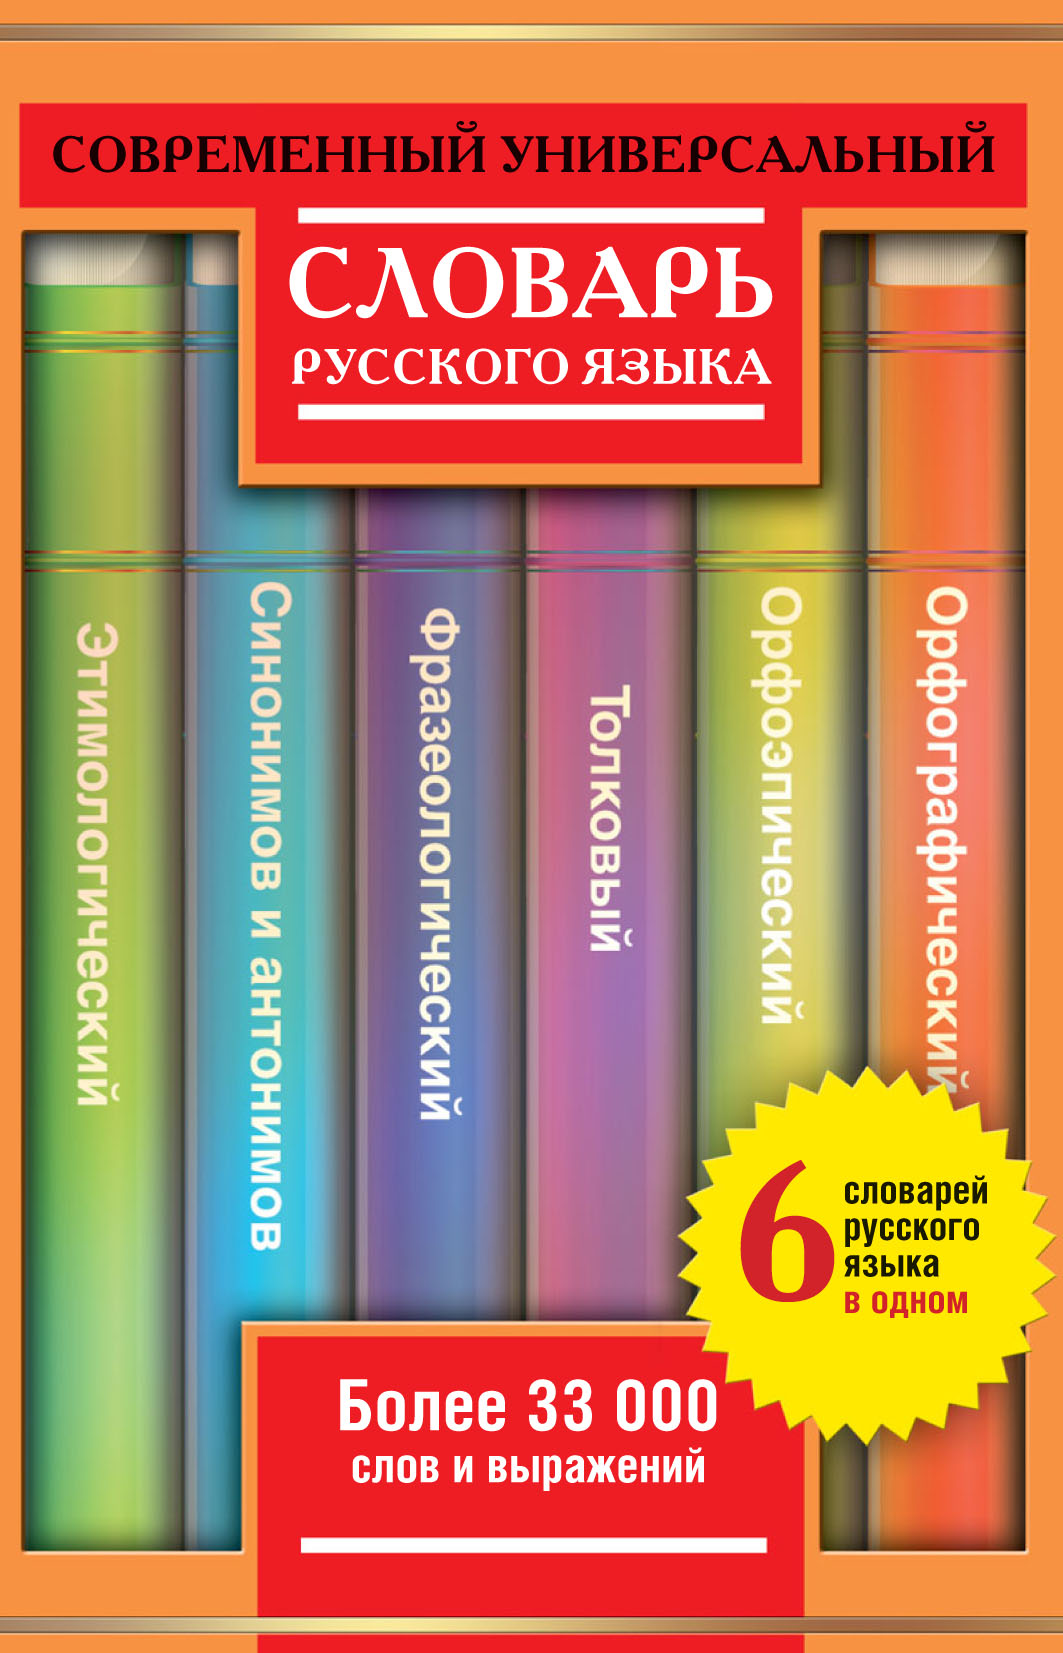 Современный универсальный словарь русского языка: 6 словарей в одном. Более 33 000 слов и выражений